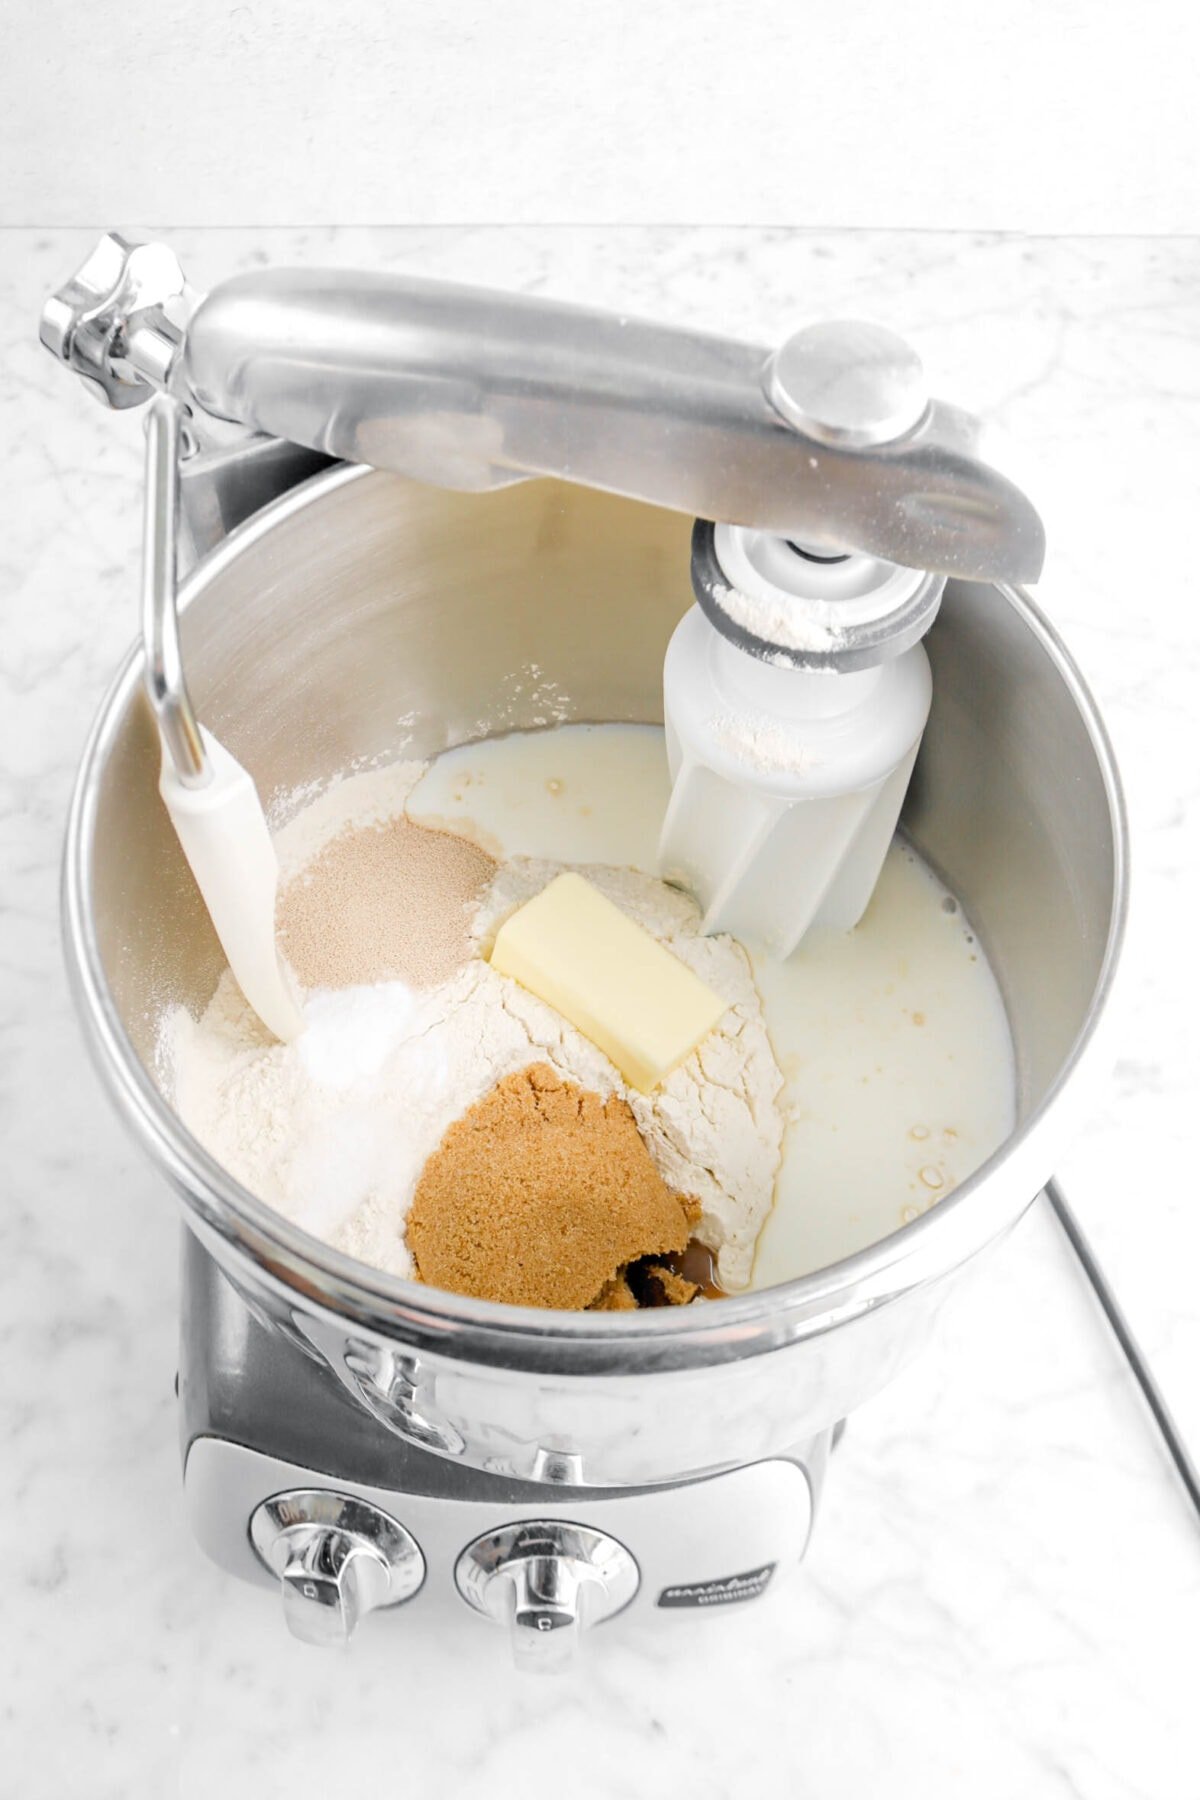 flour, yeast, baking powder, salt, brown sugar, butter, and milk in mixer